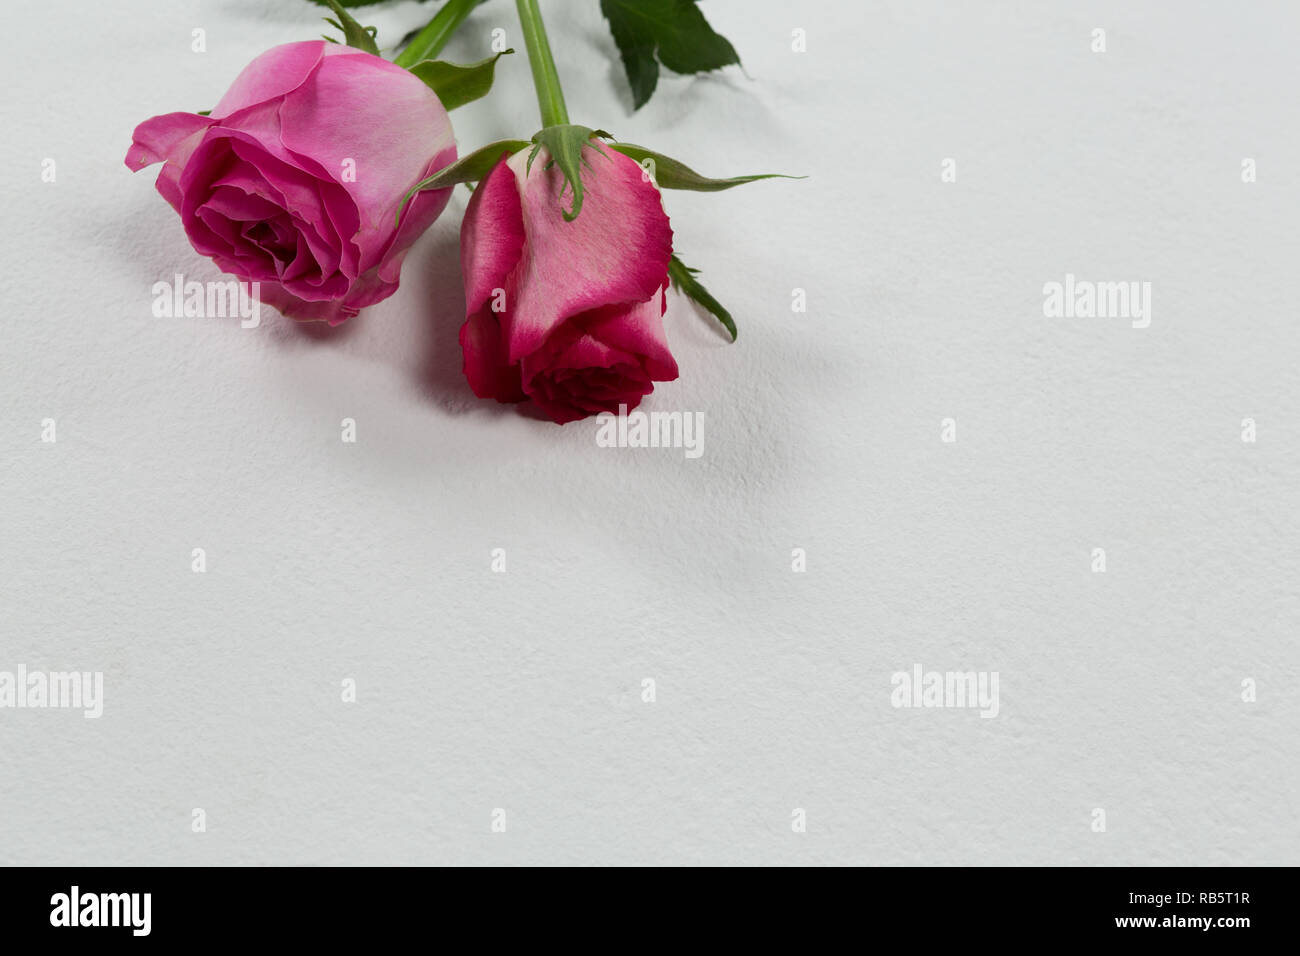 Rose fiori disposti su sfondo bianco Foto Stock